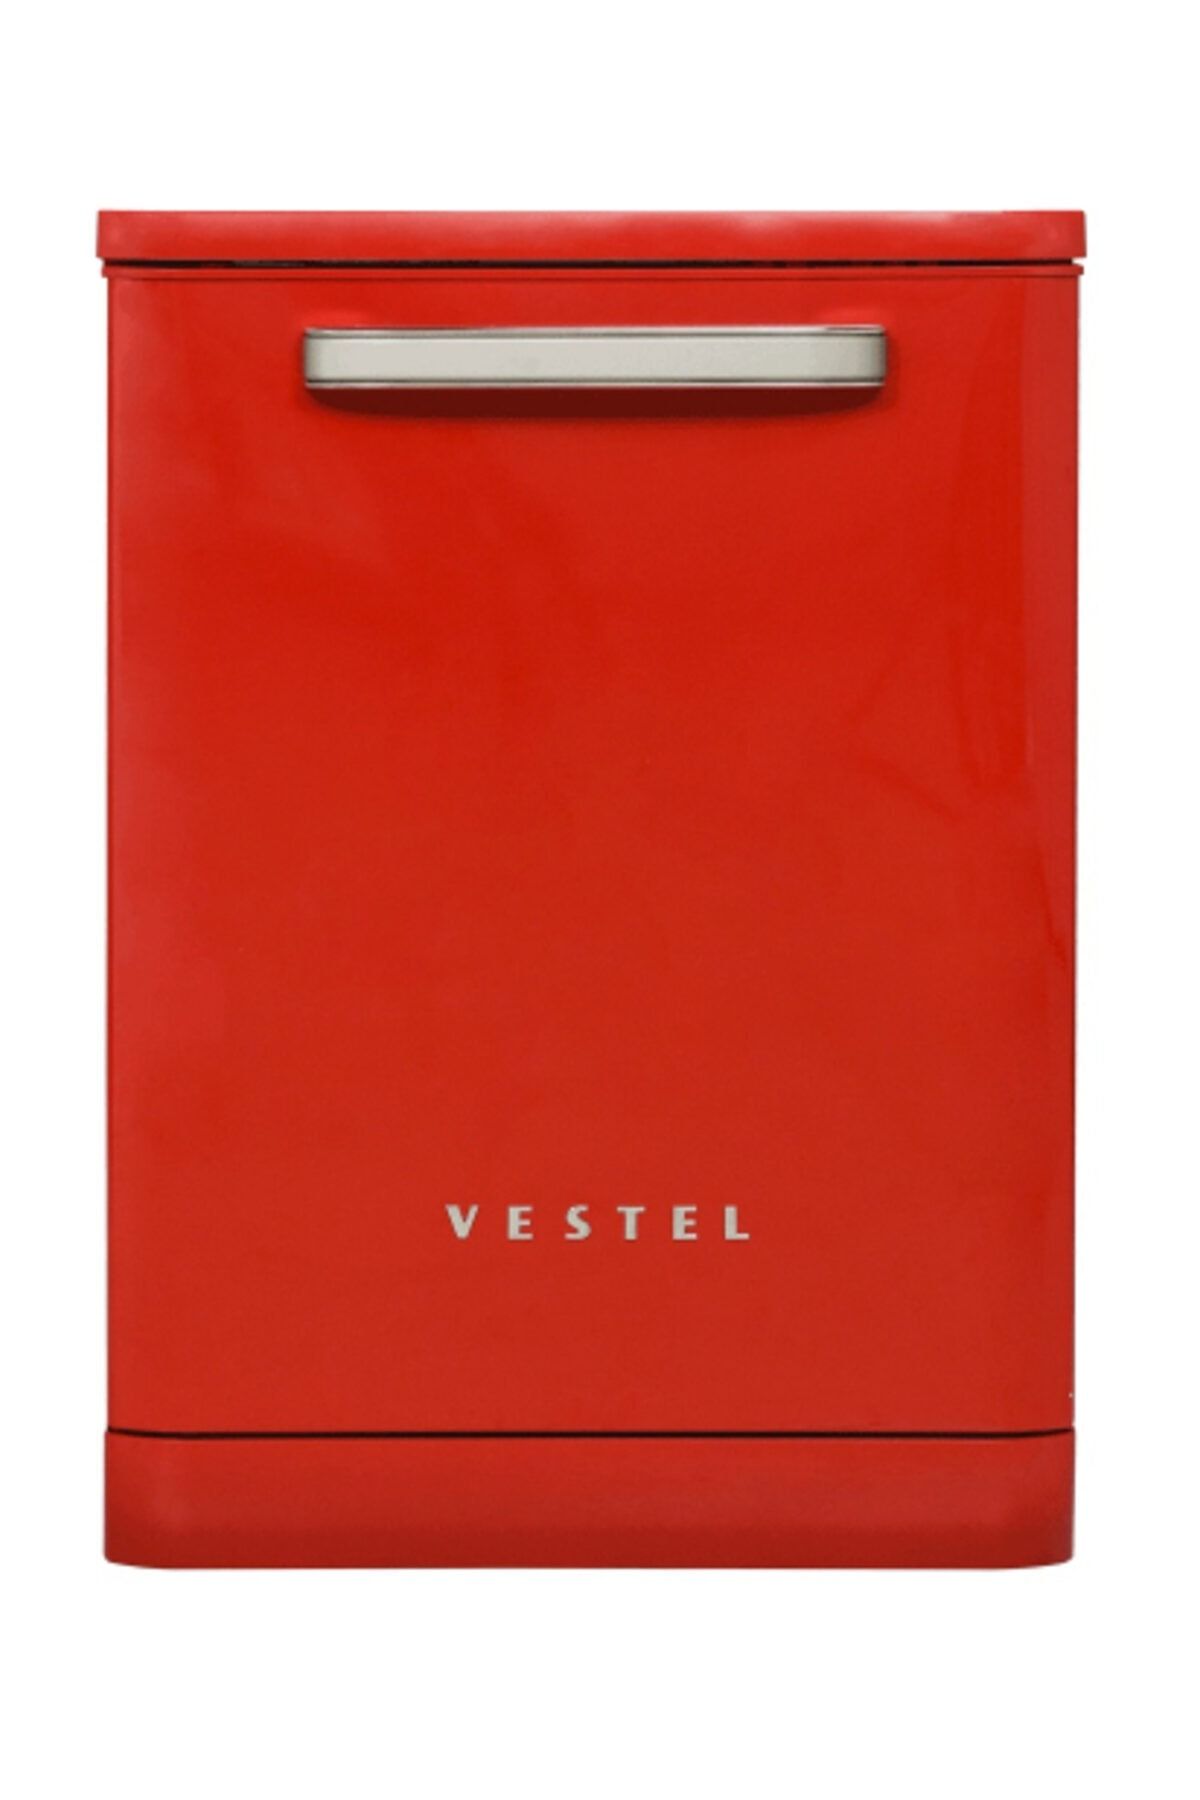 VESTEL BM-500 Retro A++ Kırmızı 5 Programlı Bulaşık Makinesi